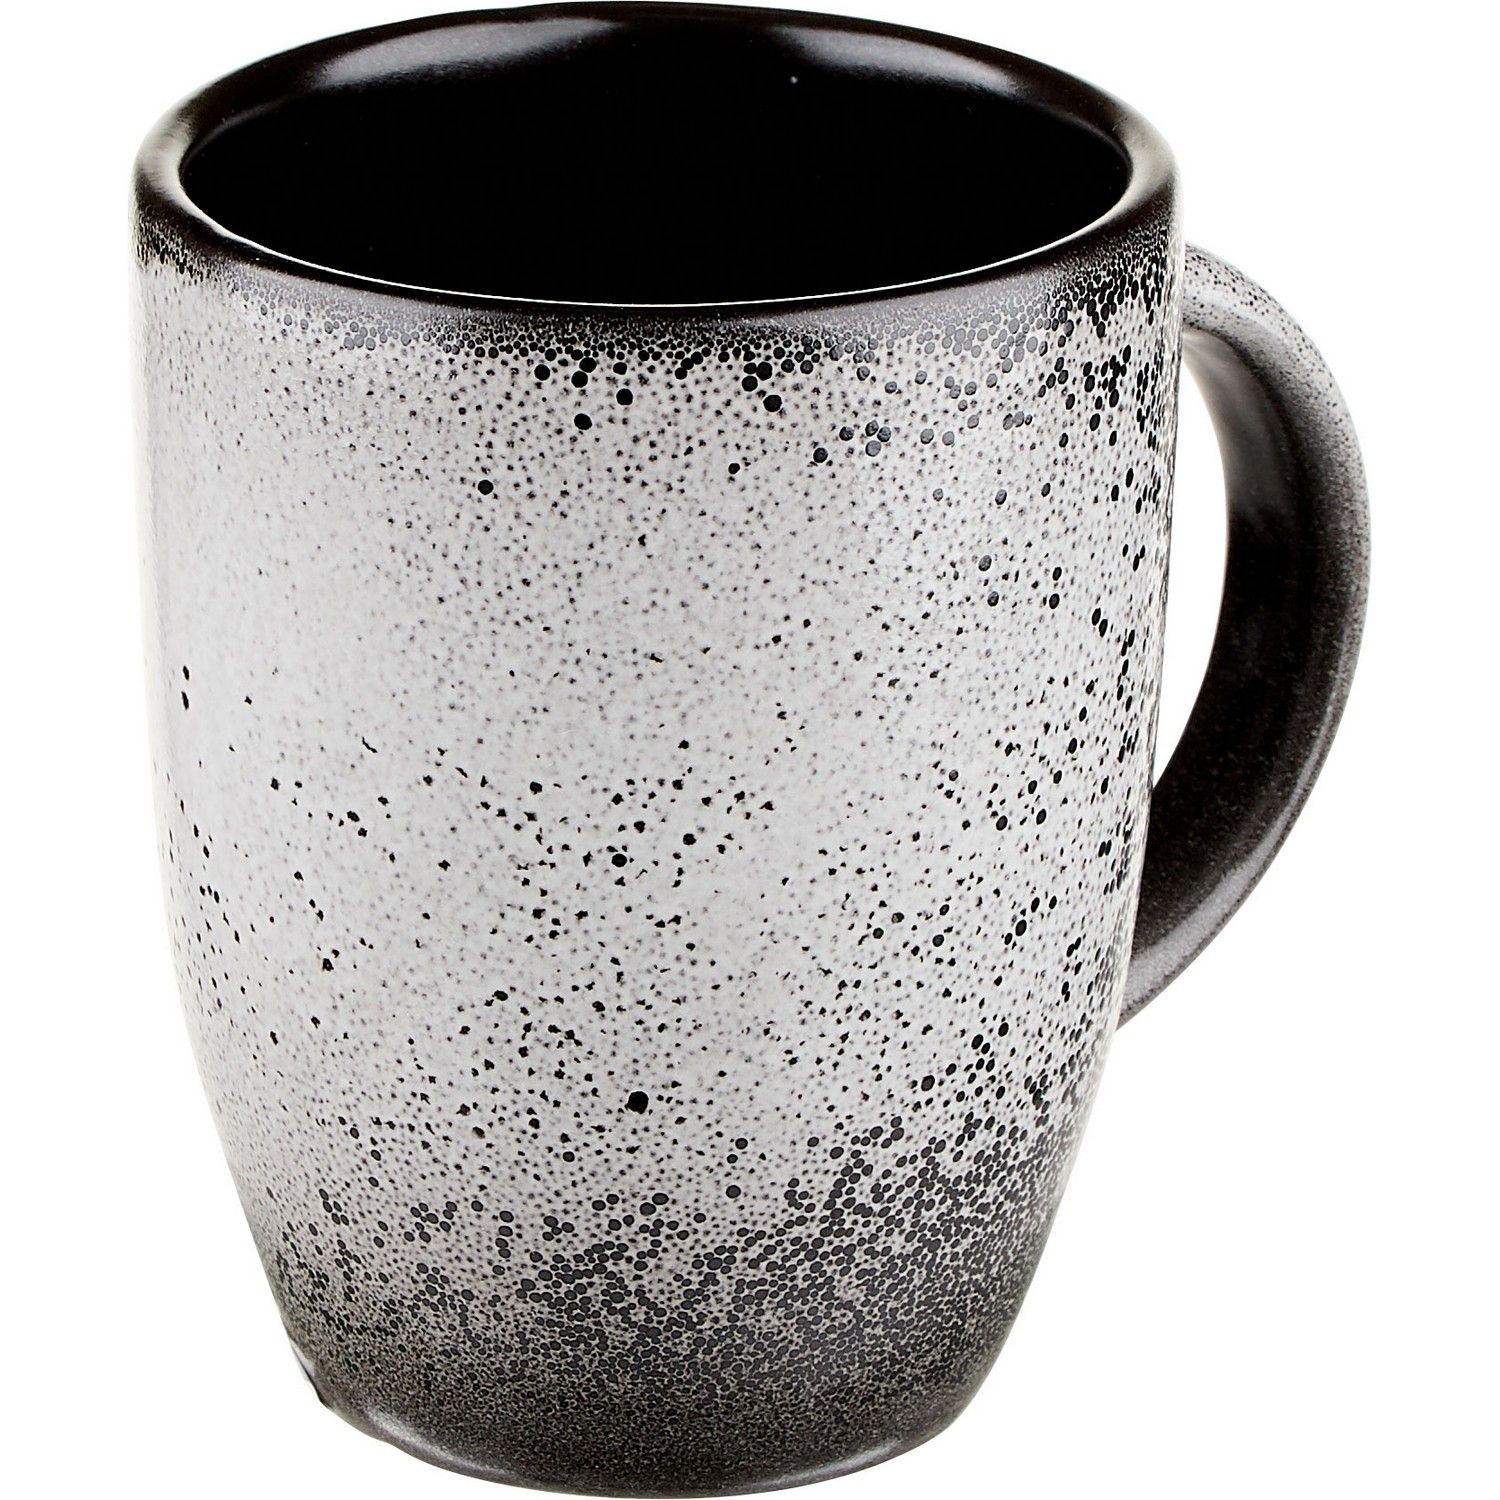 Чашка Борисовская Керамика Млечный путь чайная 300мл 80х80х105мм фарфор белый-черный